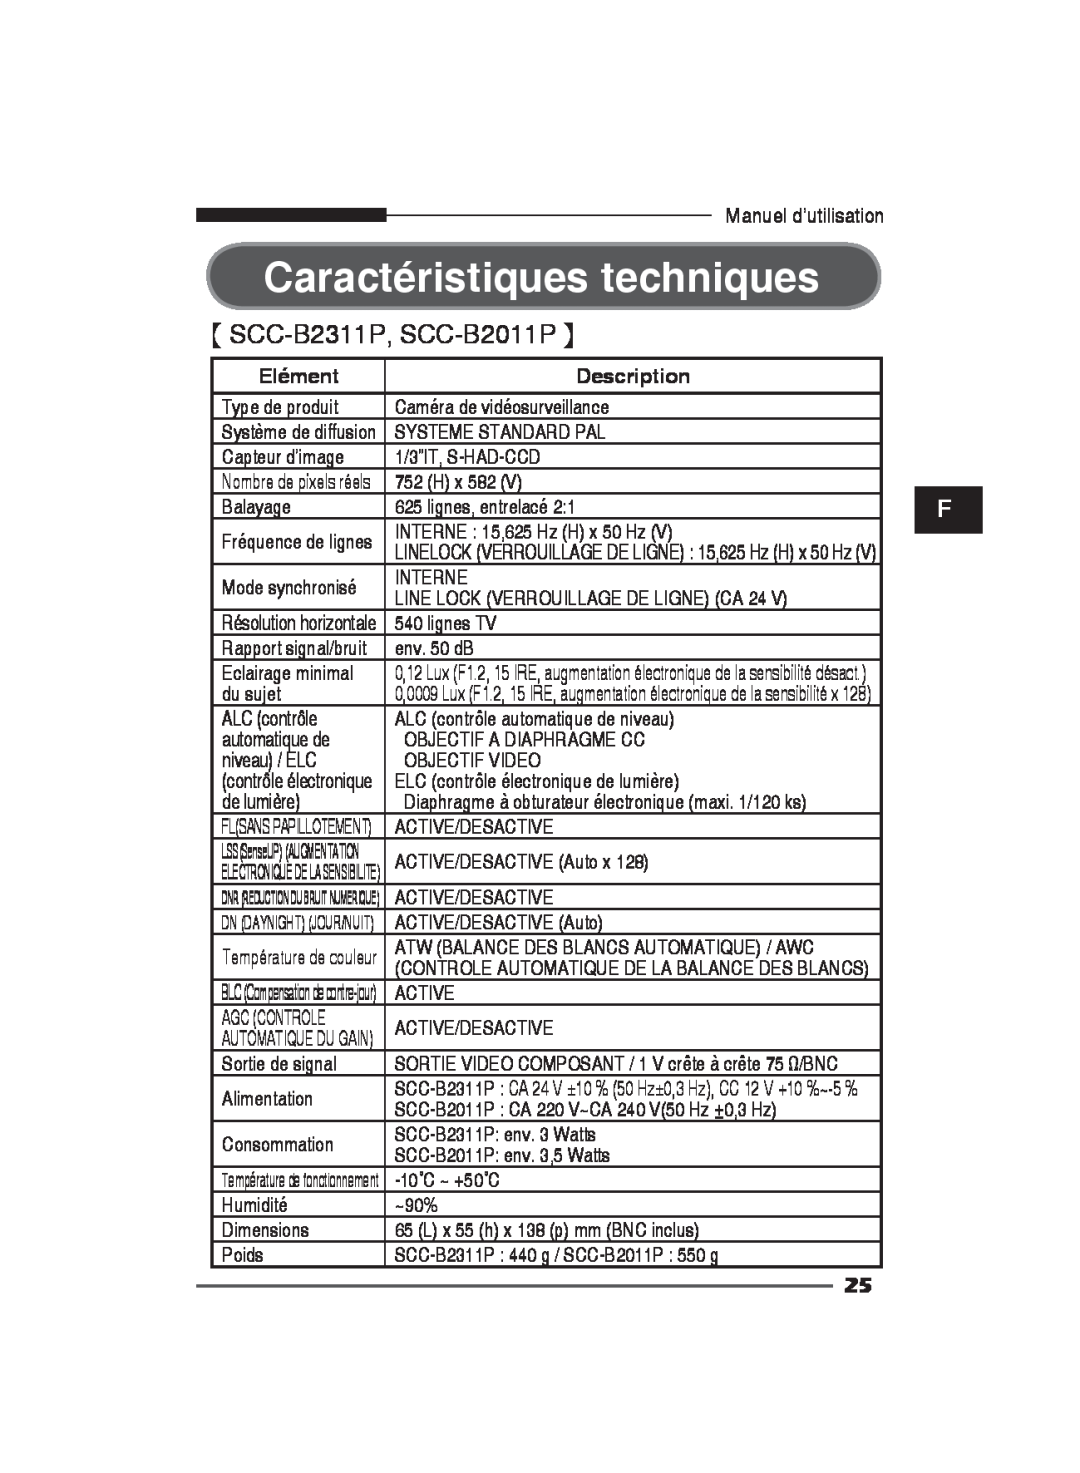 Samsung SCC-B2311N, SCC-B2311P, SCC-B2011P manual Caractéristiques techniques, Elément, Description, Automatique Du Gain 